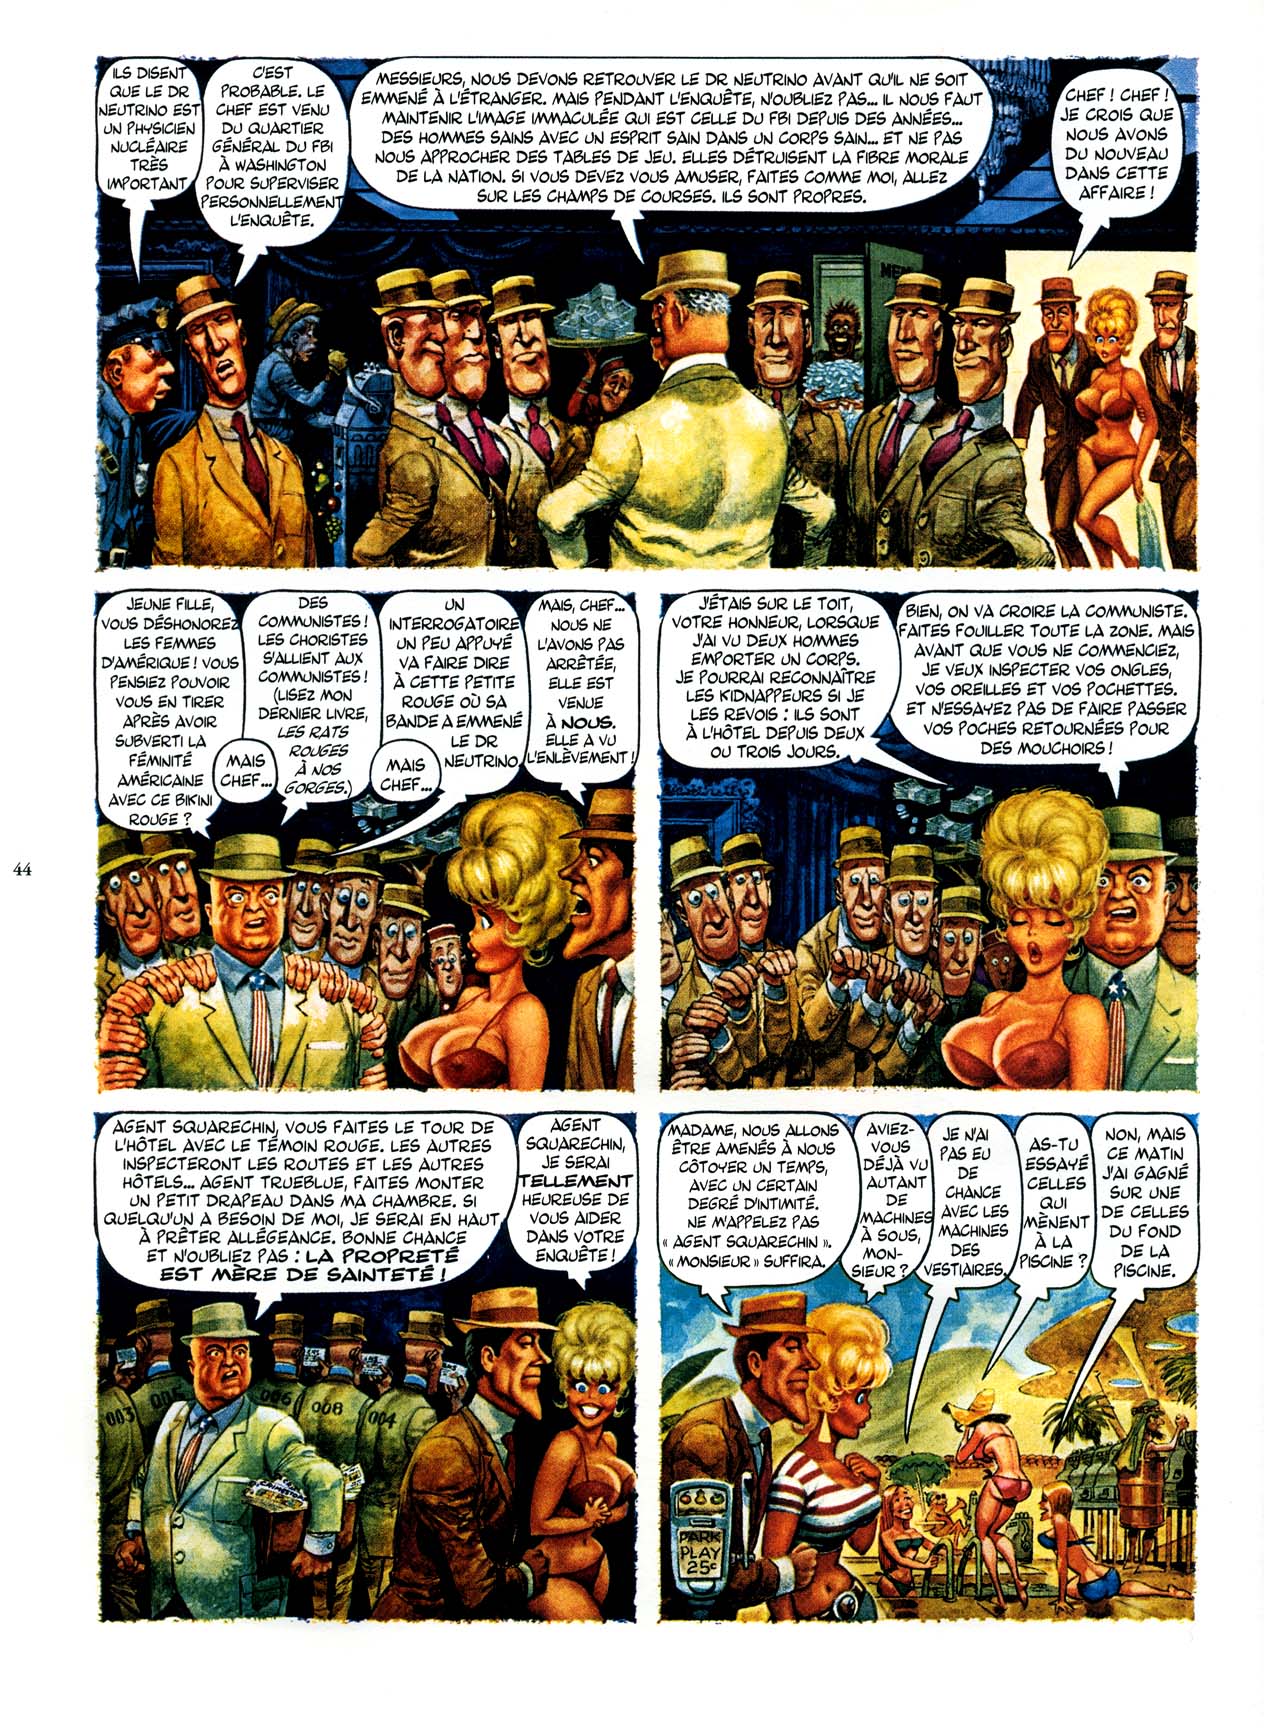 Playboys Little Annie Fanny Vol. 2 - 1965-1970 numero d'image 44